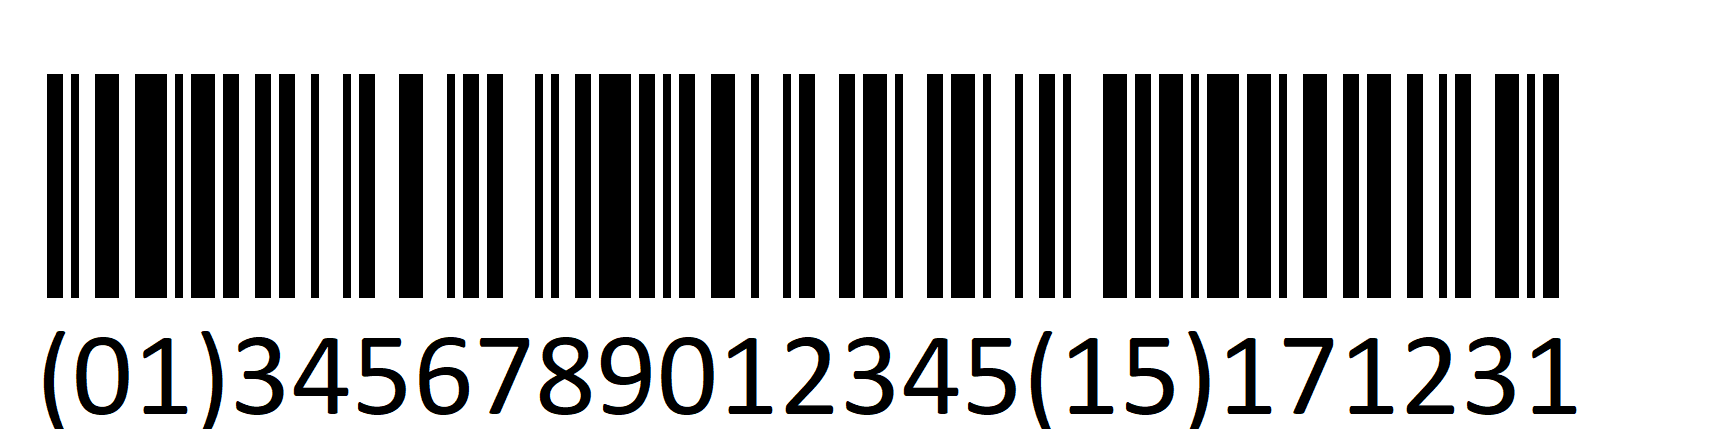 Barcode 5.3 1